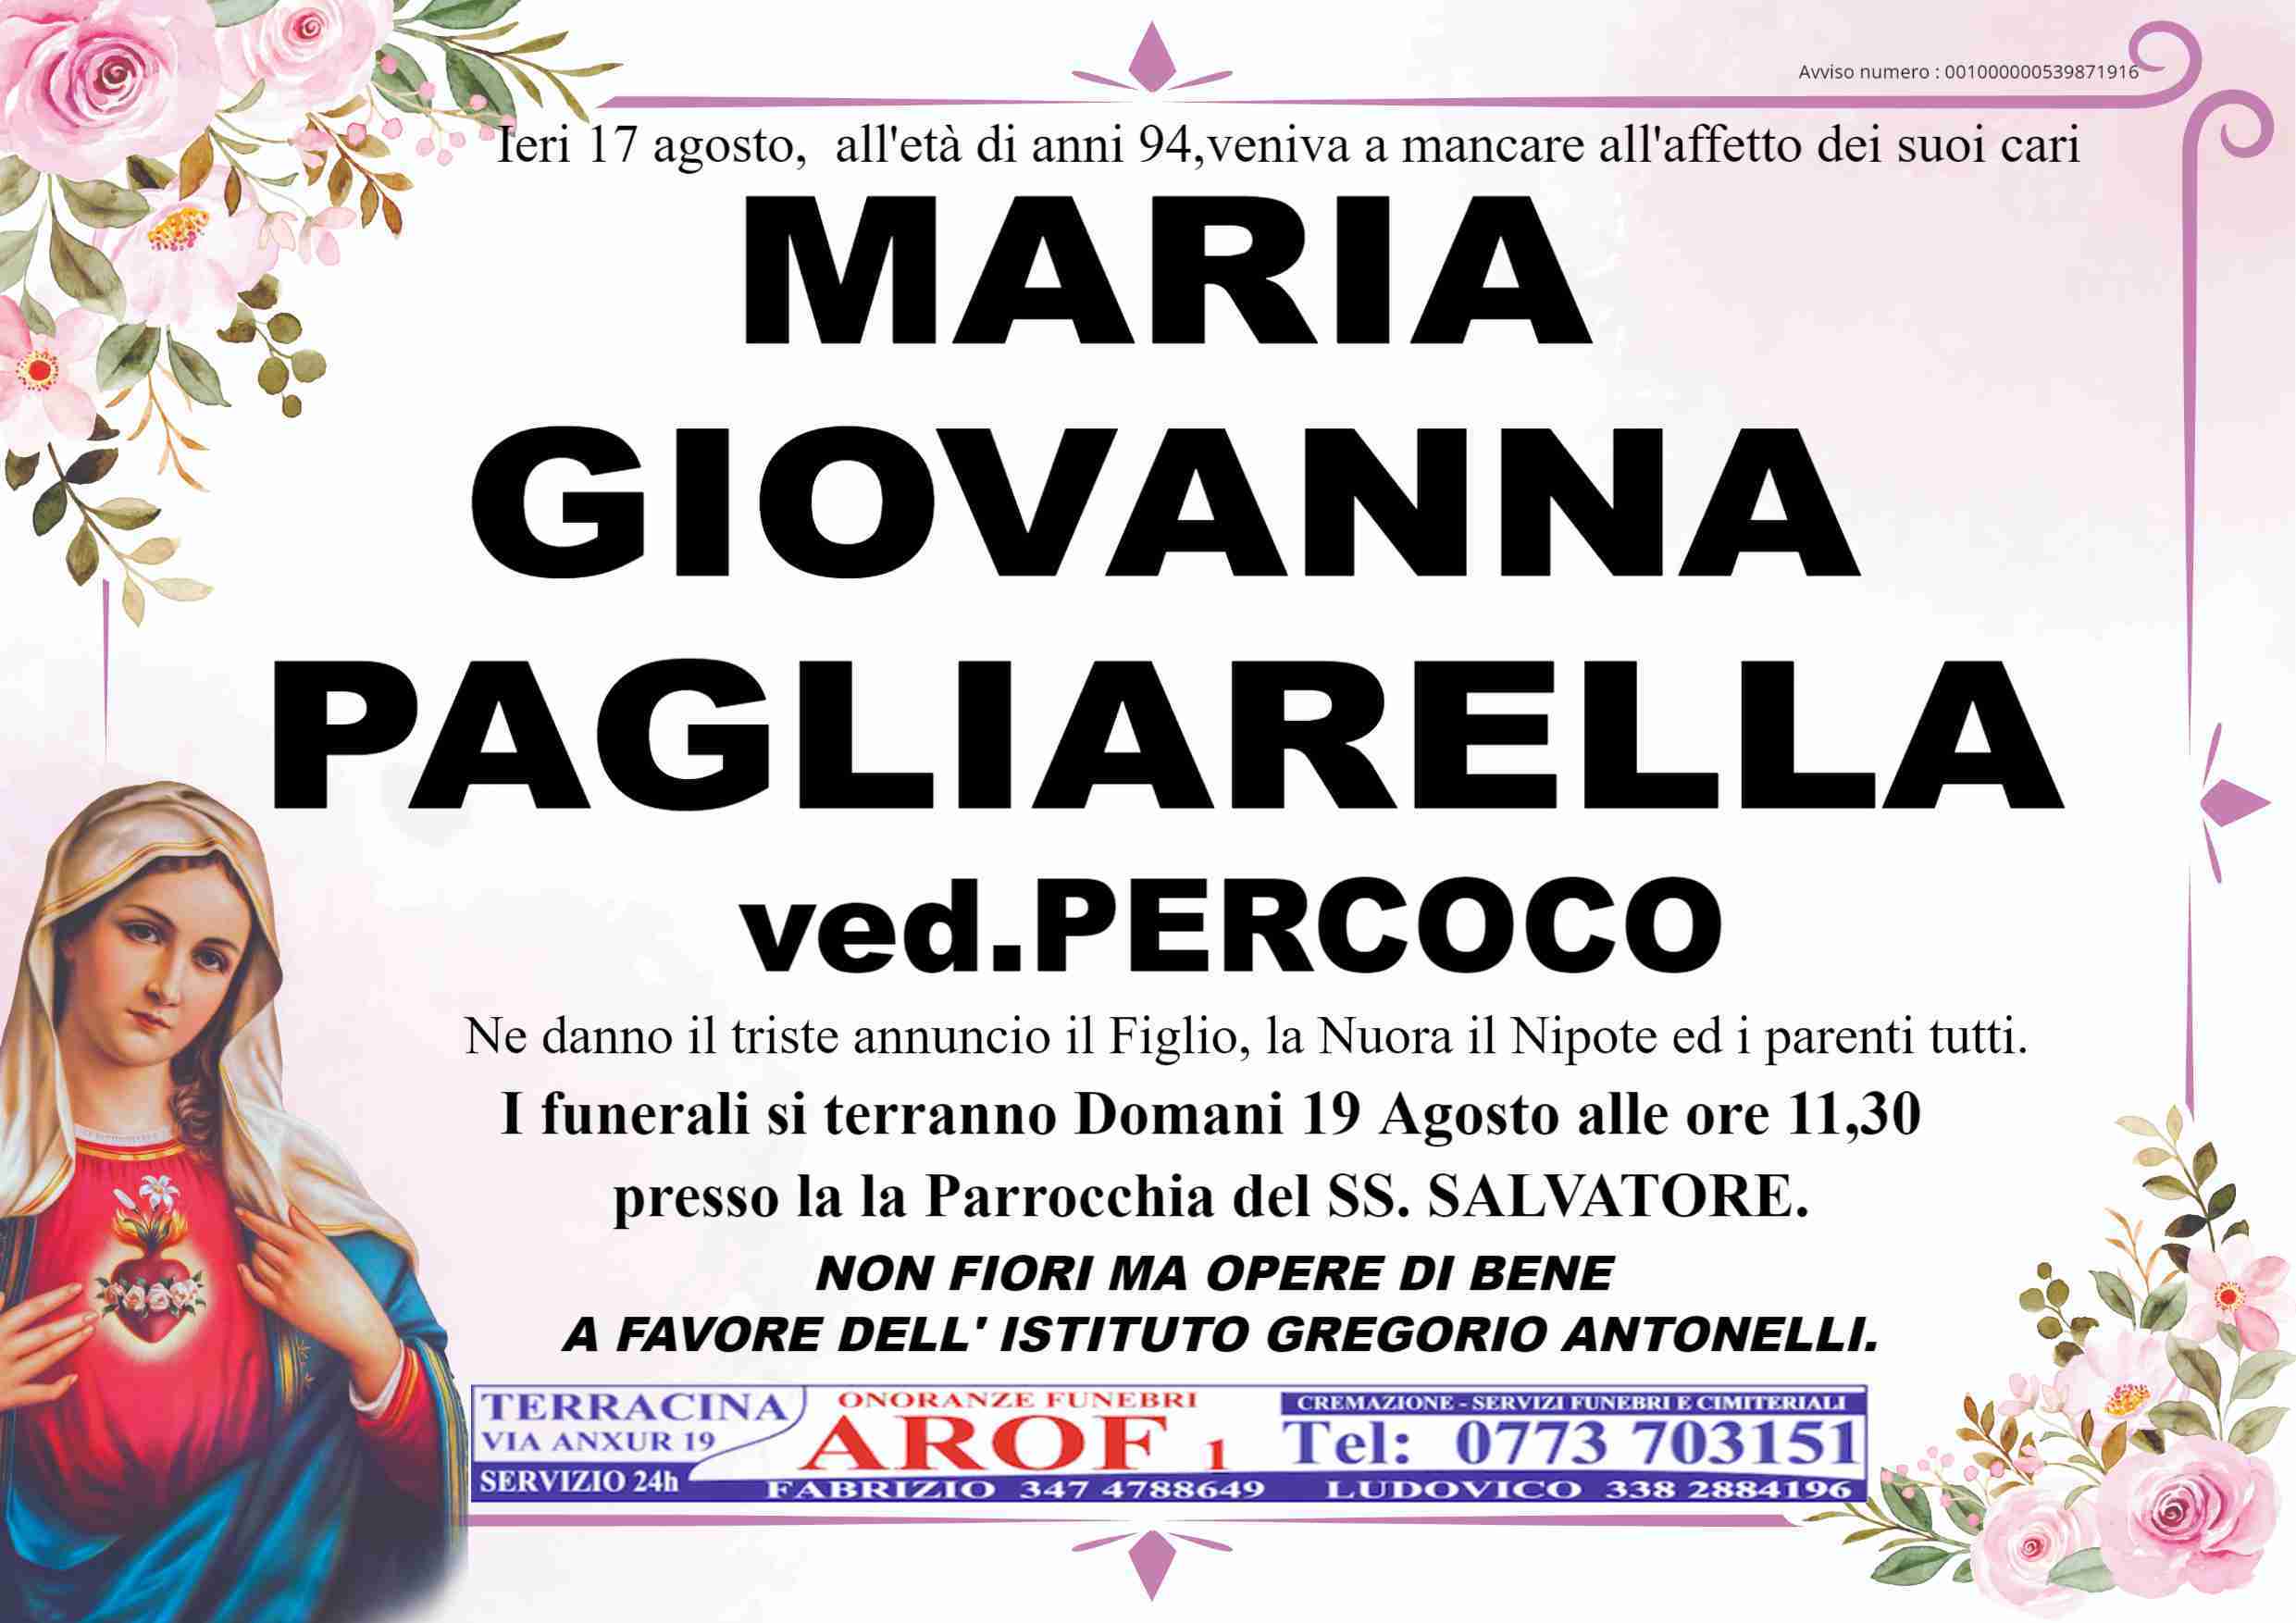 Maria Giovanna Pagliarella